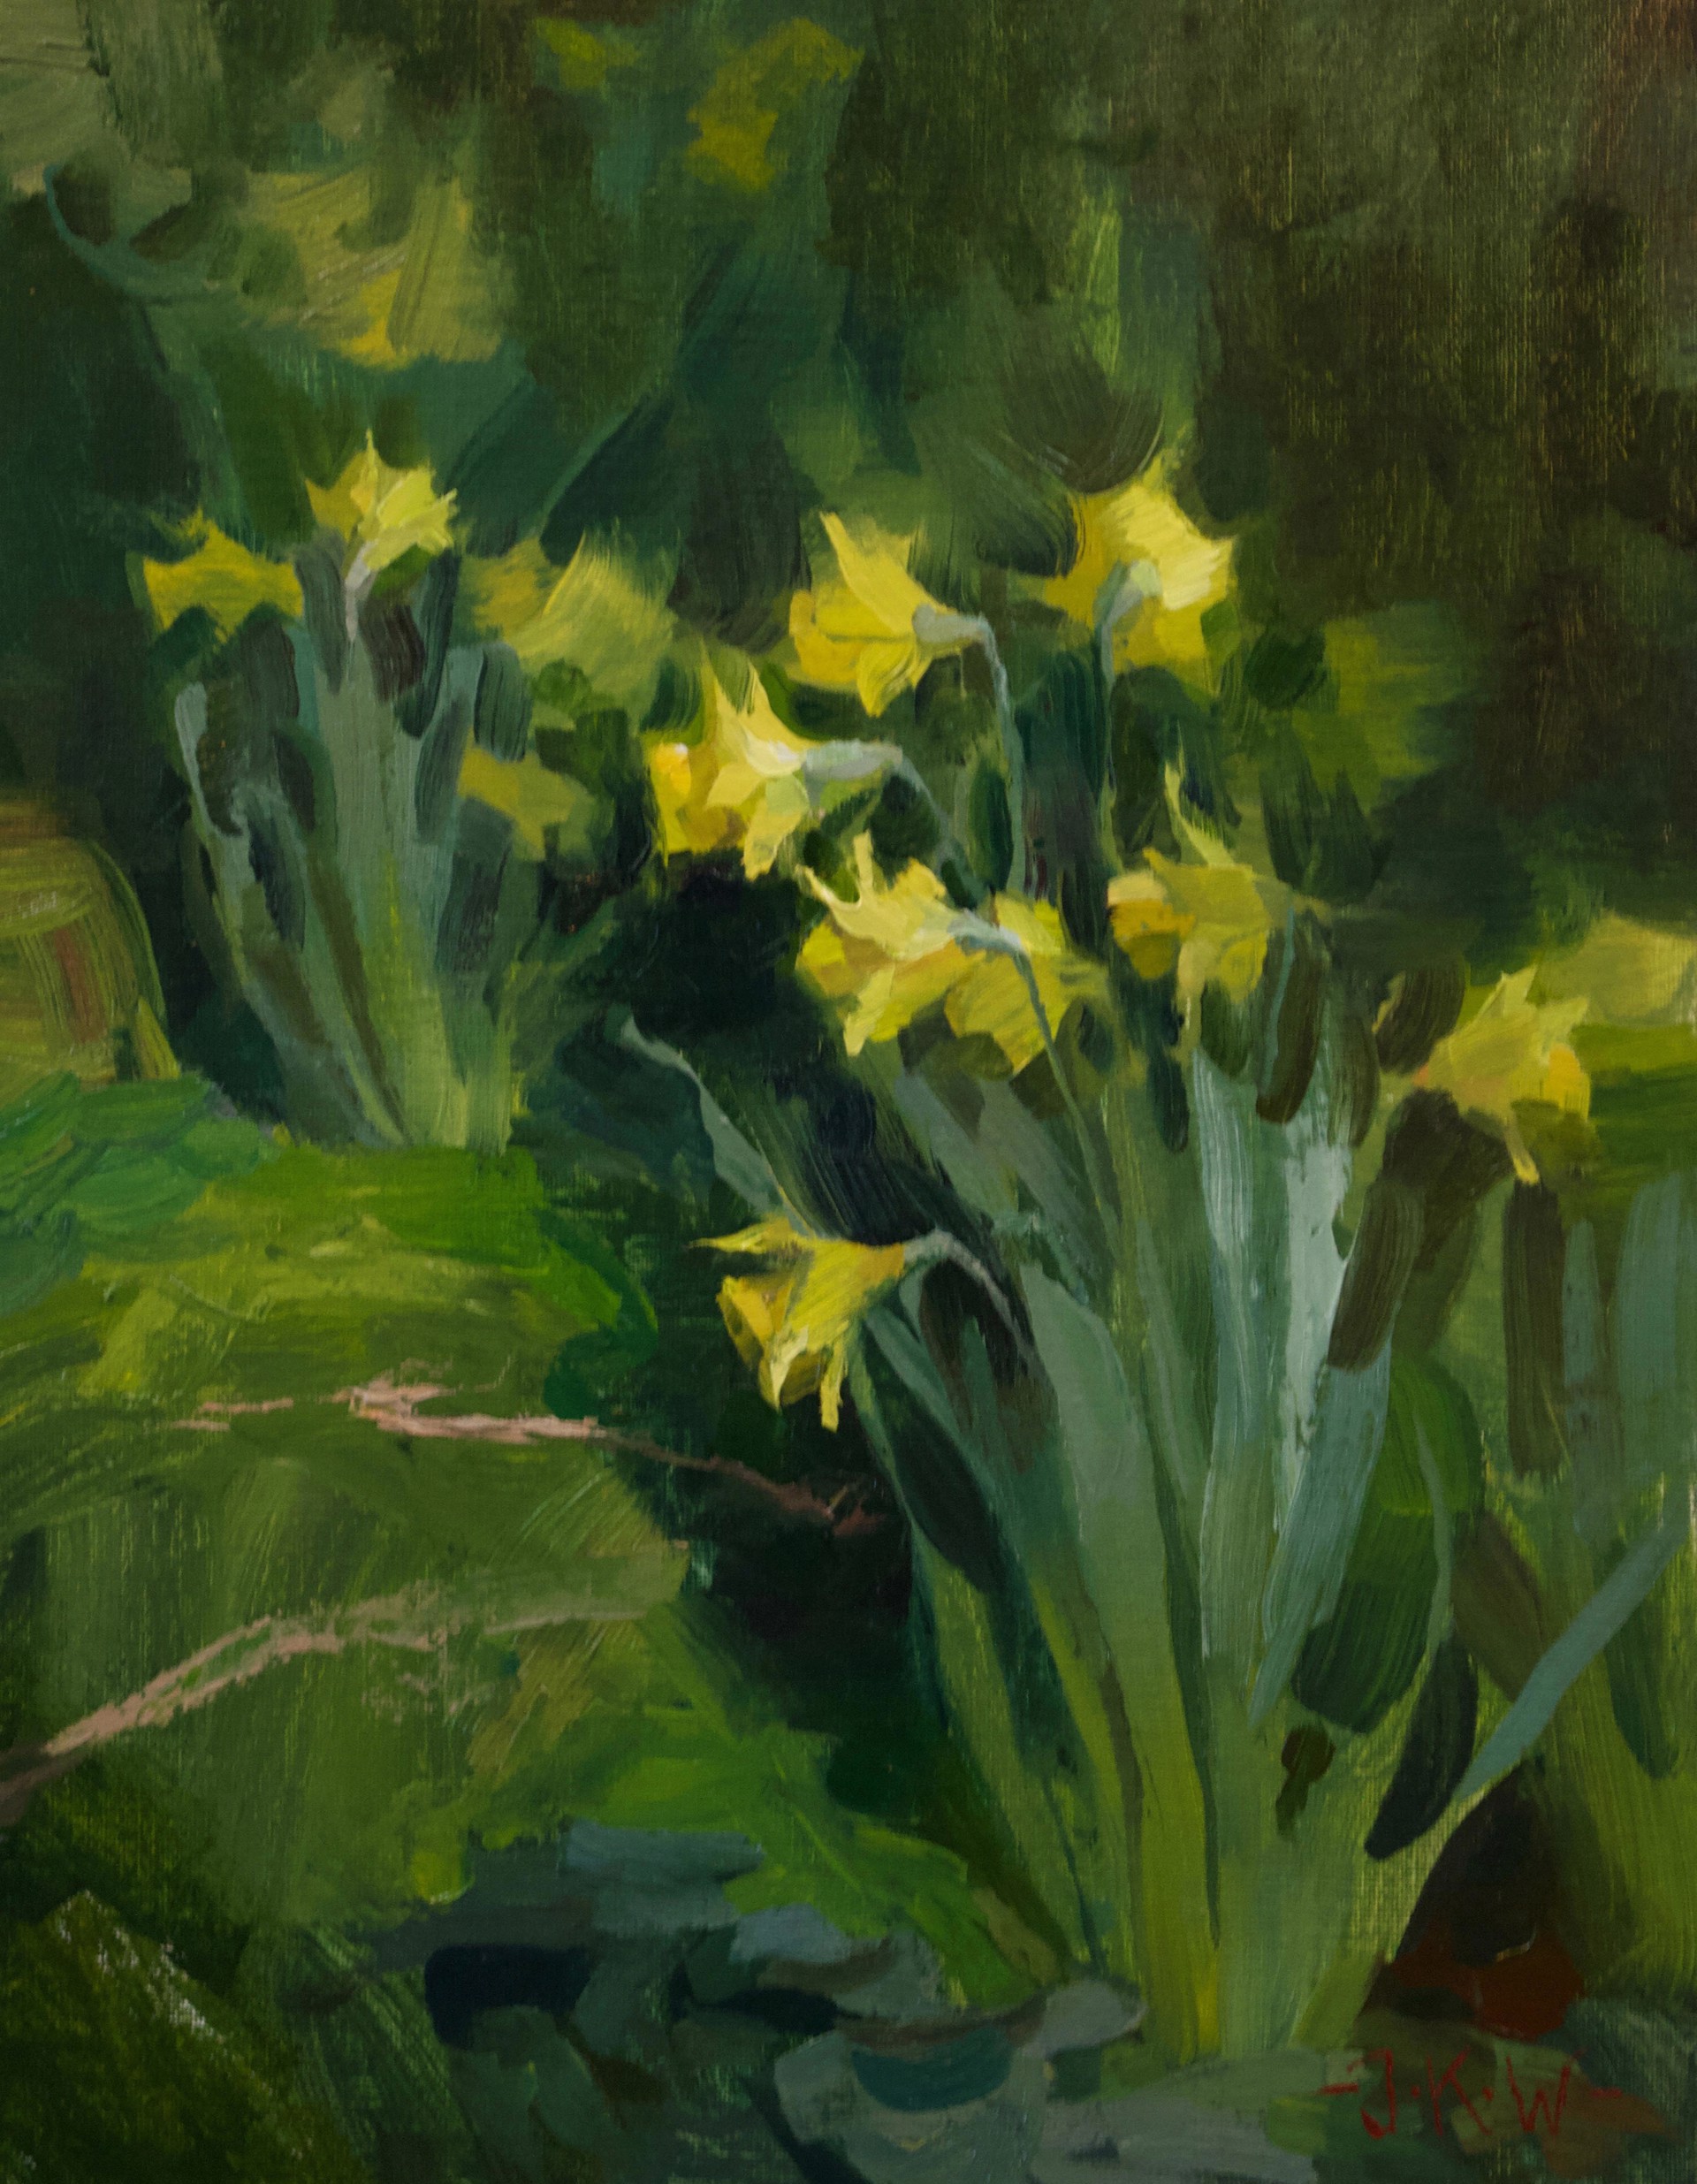 Daffodils by Jordan Walker